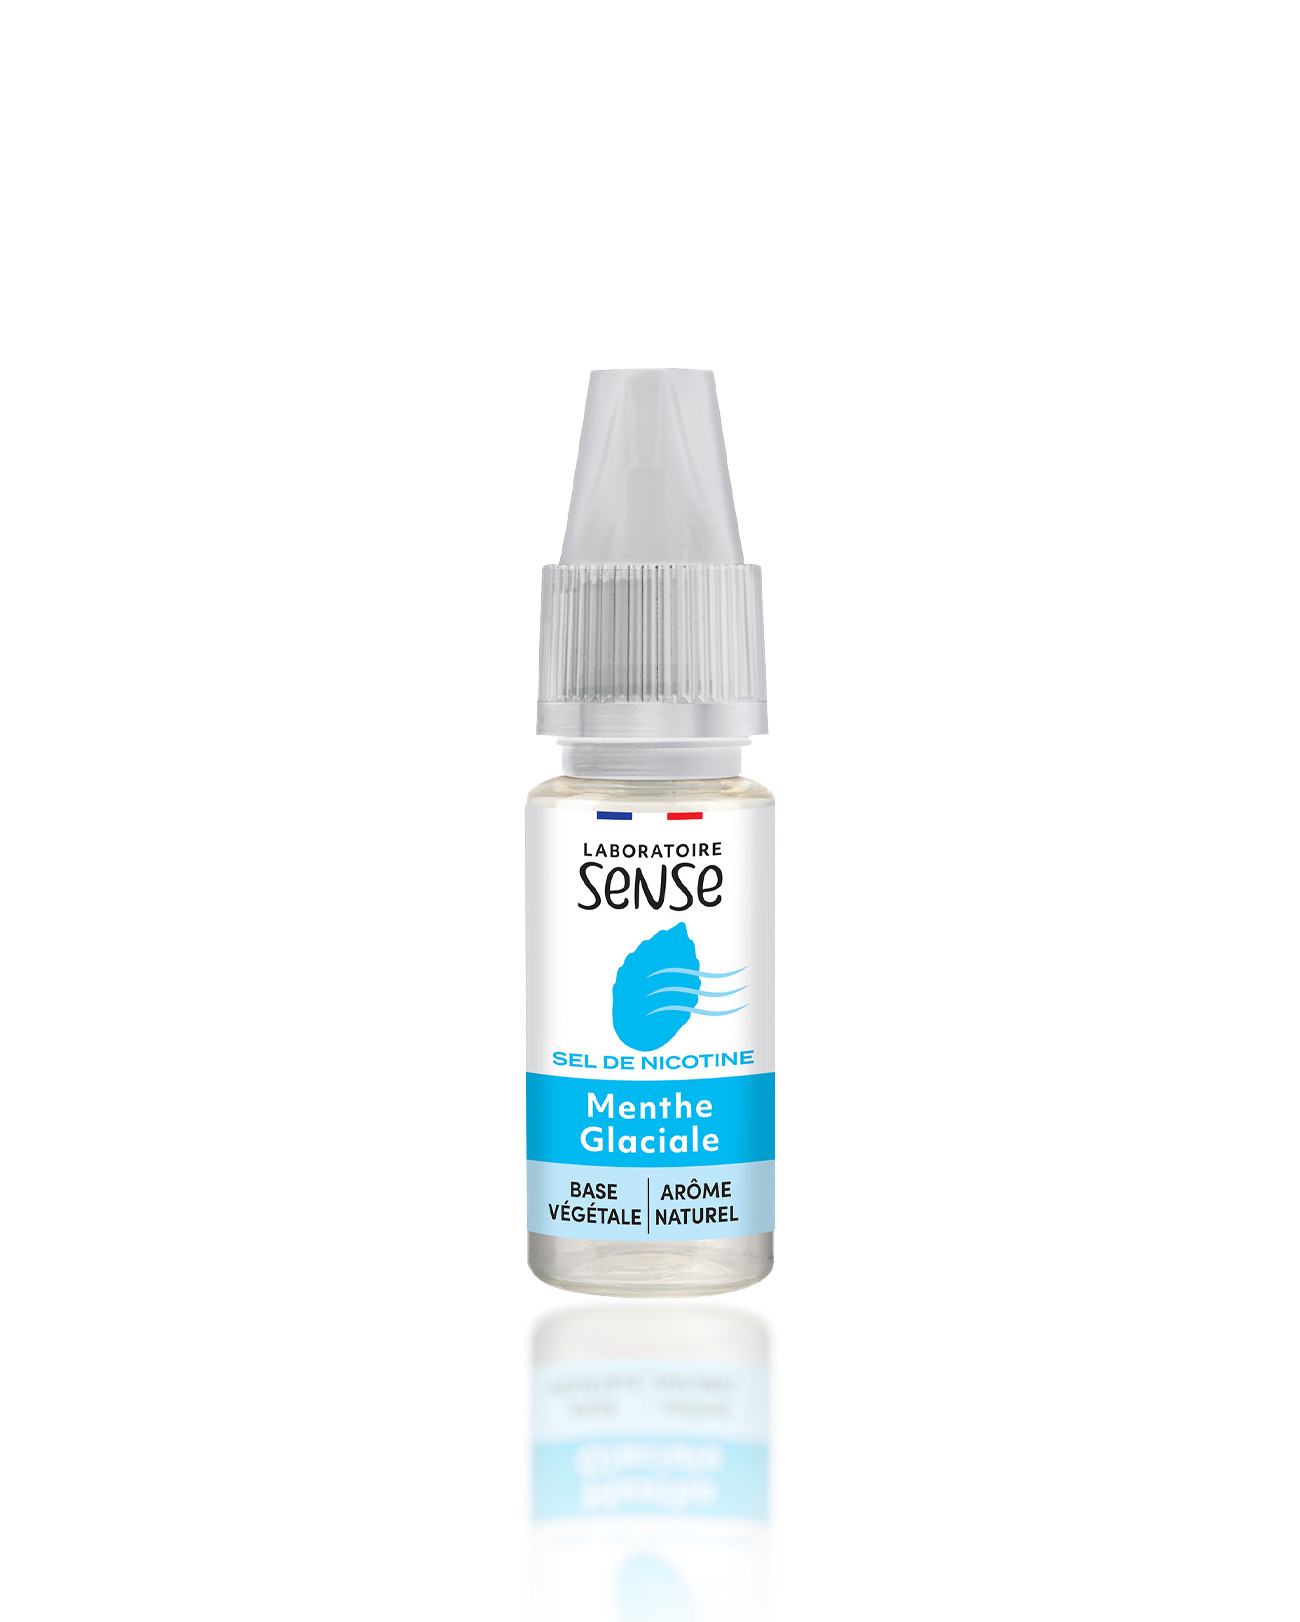 E-liquide Laboratoire Sense 10 ml aux sels de nicotine pour cigarette électronique parfum menthe glaciale nouveau packaging